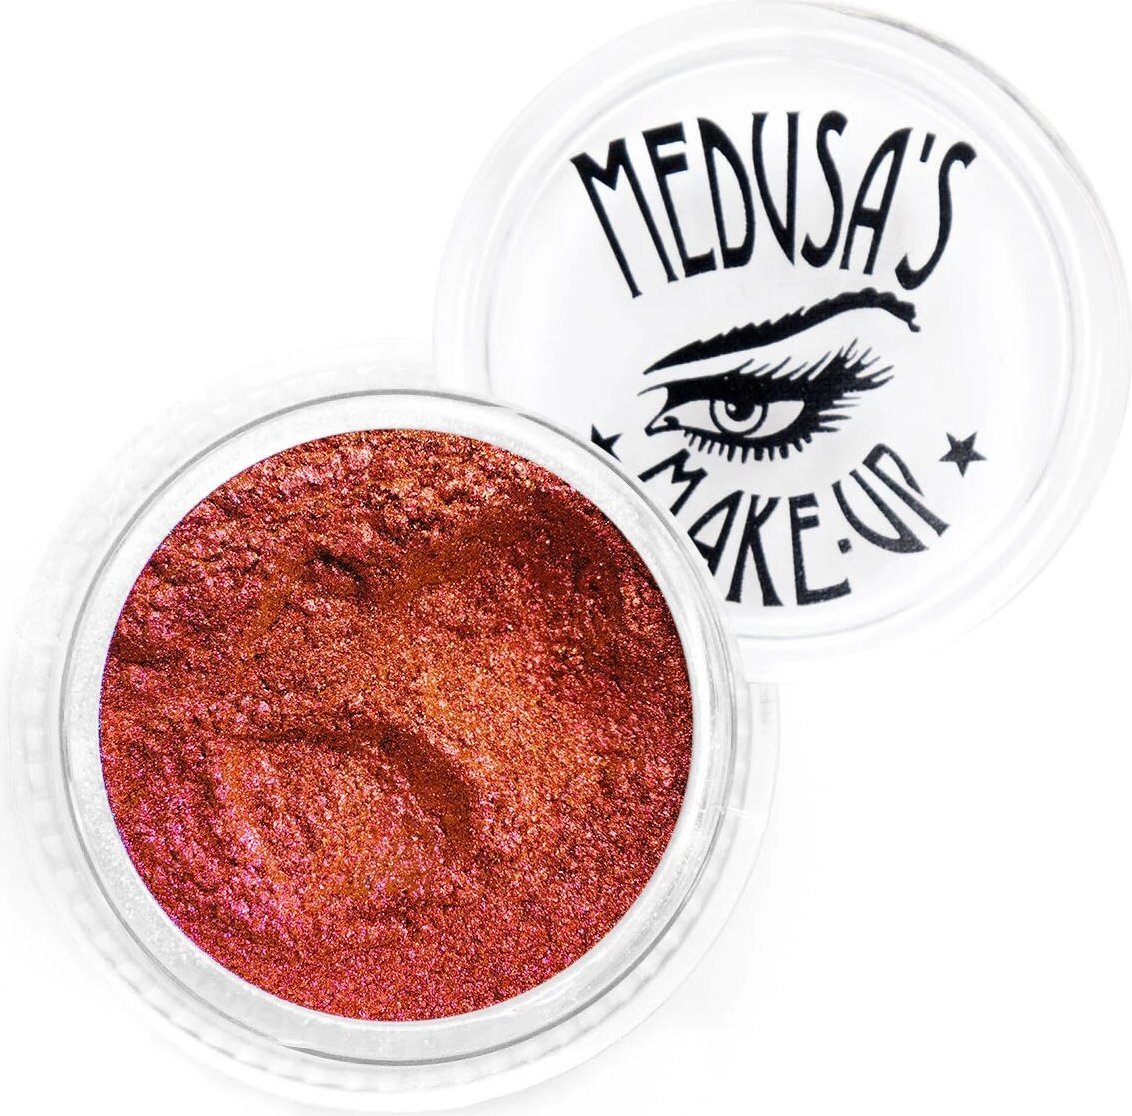 Medusas Makeup Ophelia Duochrome Eye Dust Buy Online Australia Beserk 